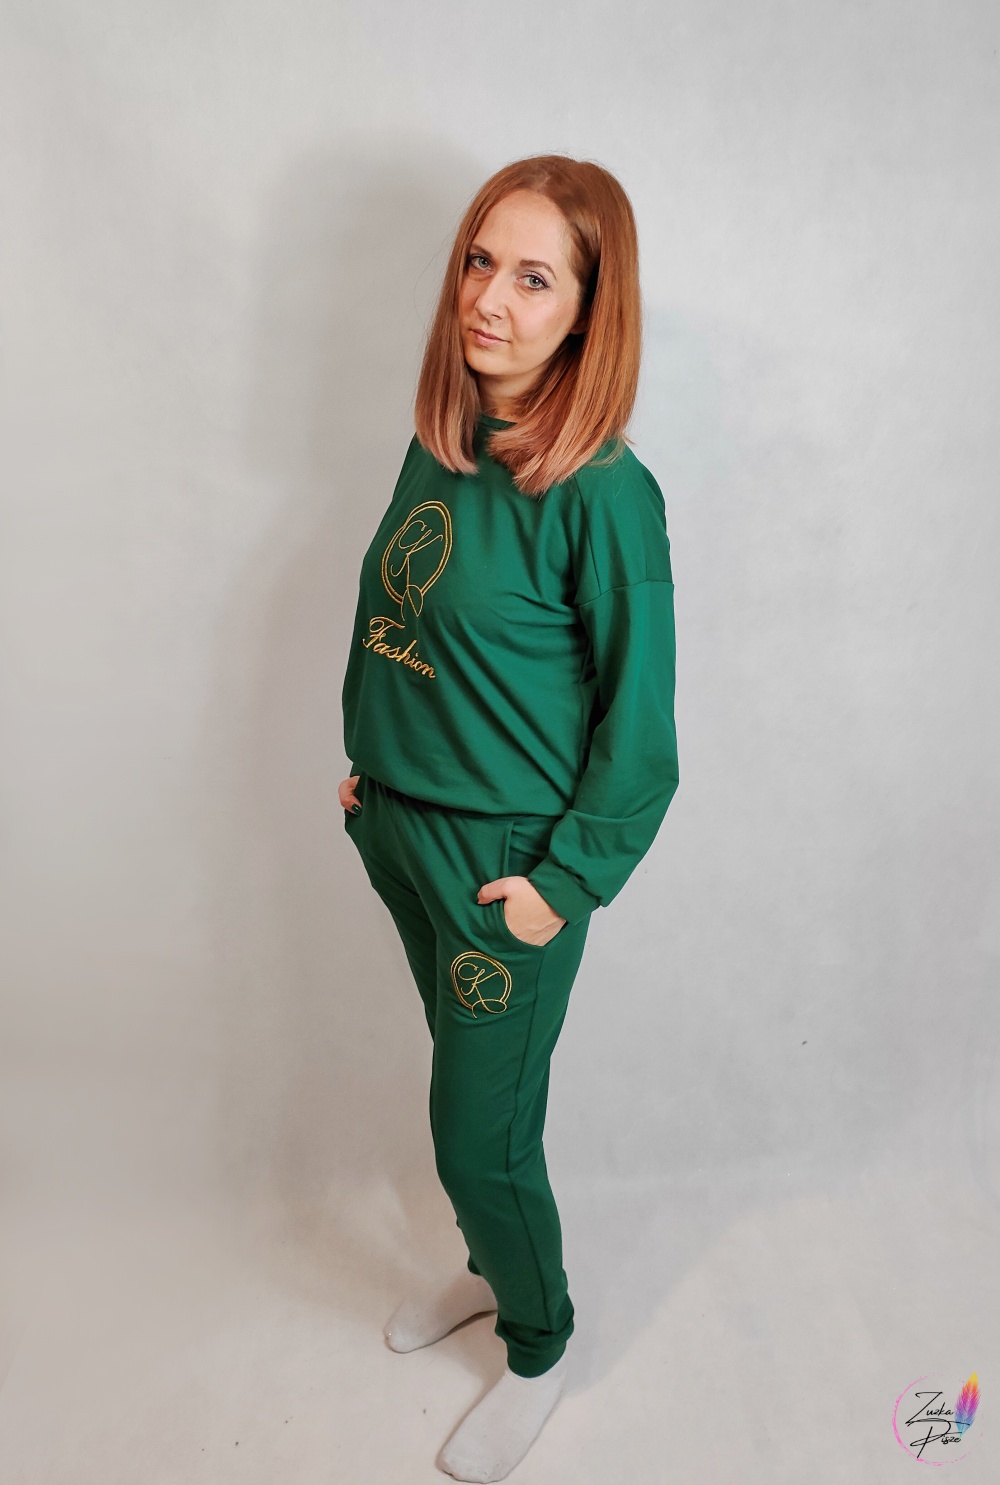 Komplet dresowy - bluza i spodnie ze złotym haftem ZOJA w kolorze butelkowej zieleni - Karko